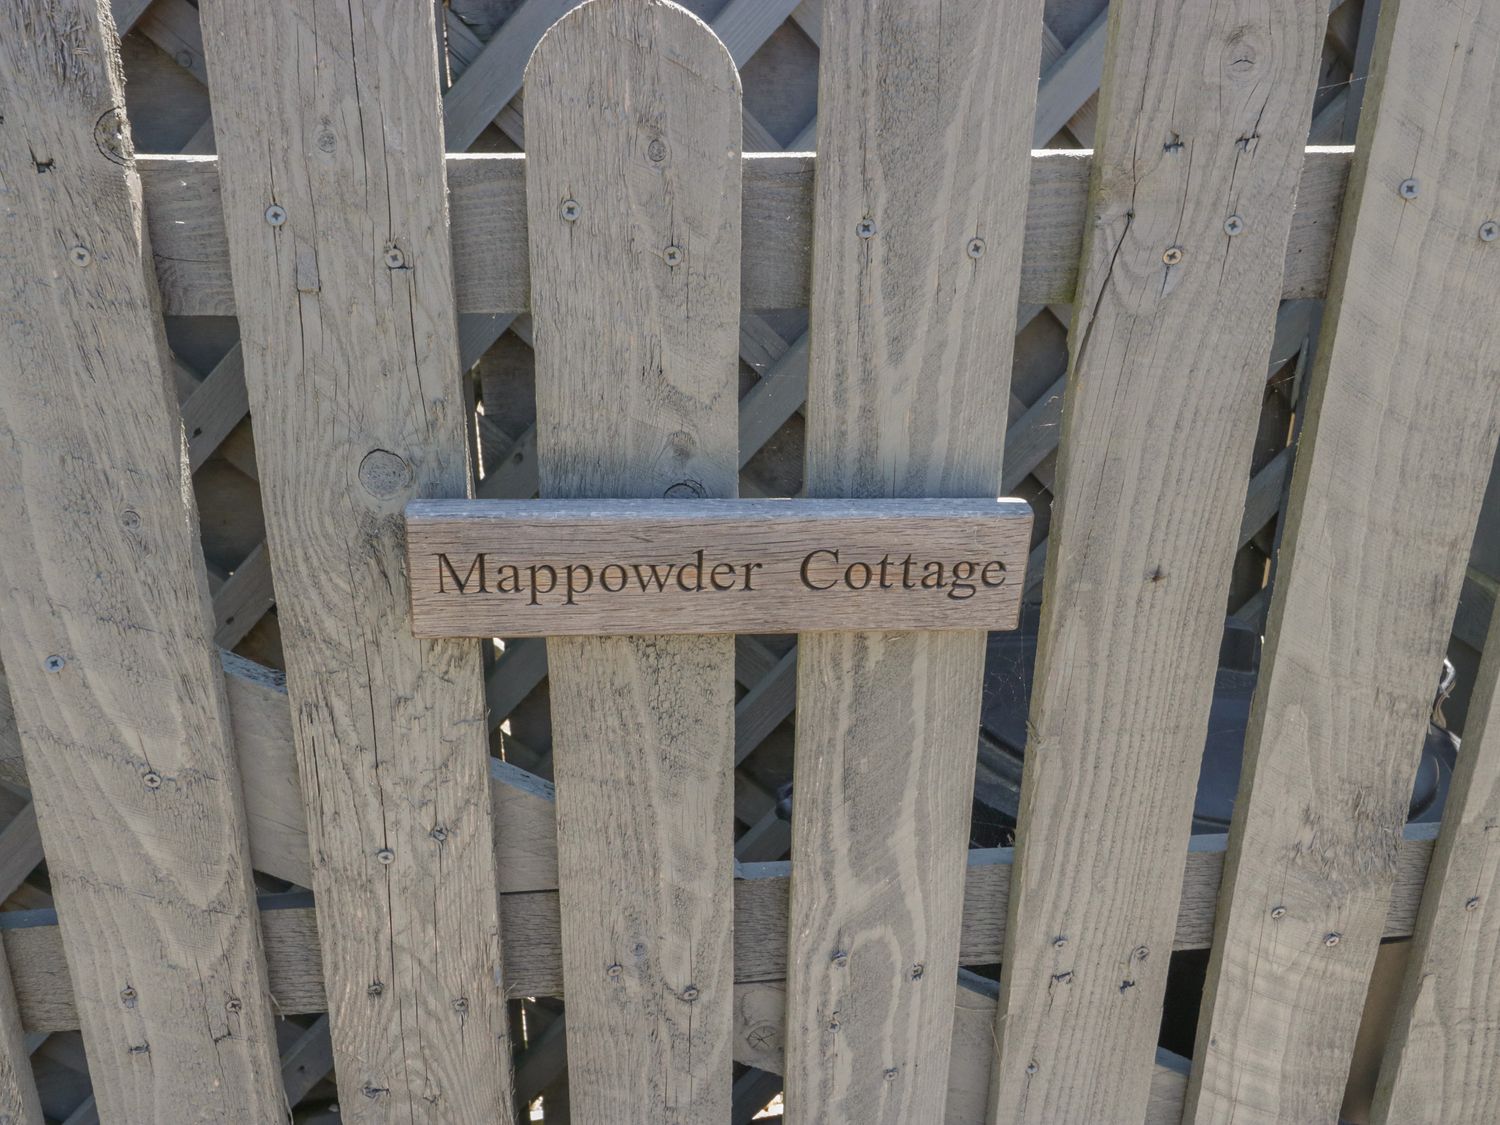 Mappowder Cottage, Dorset